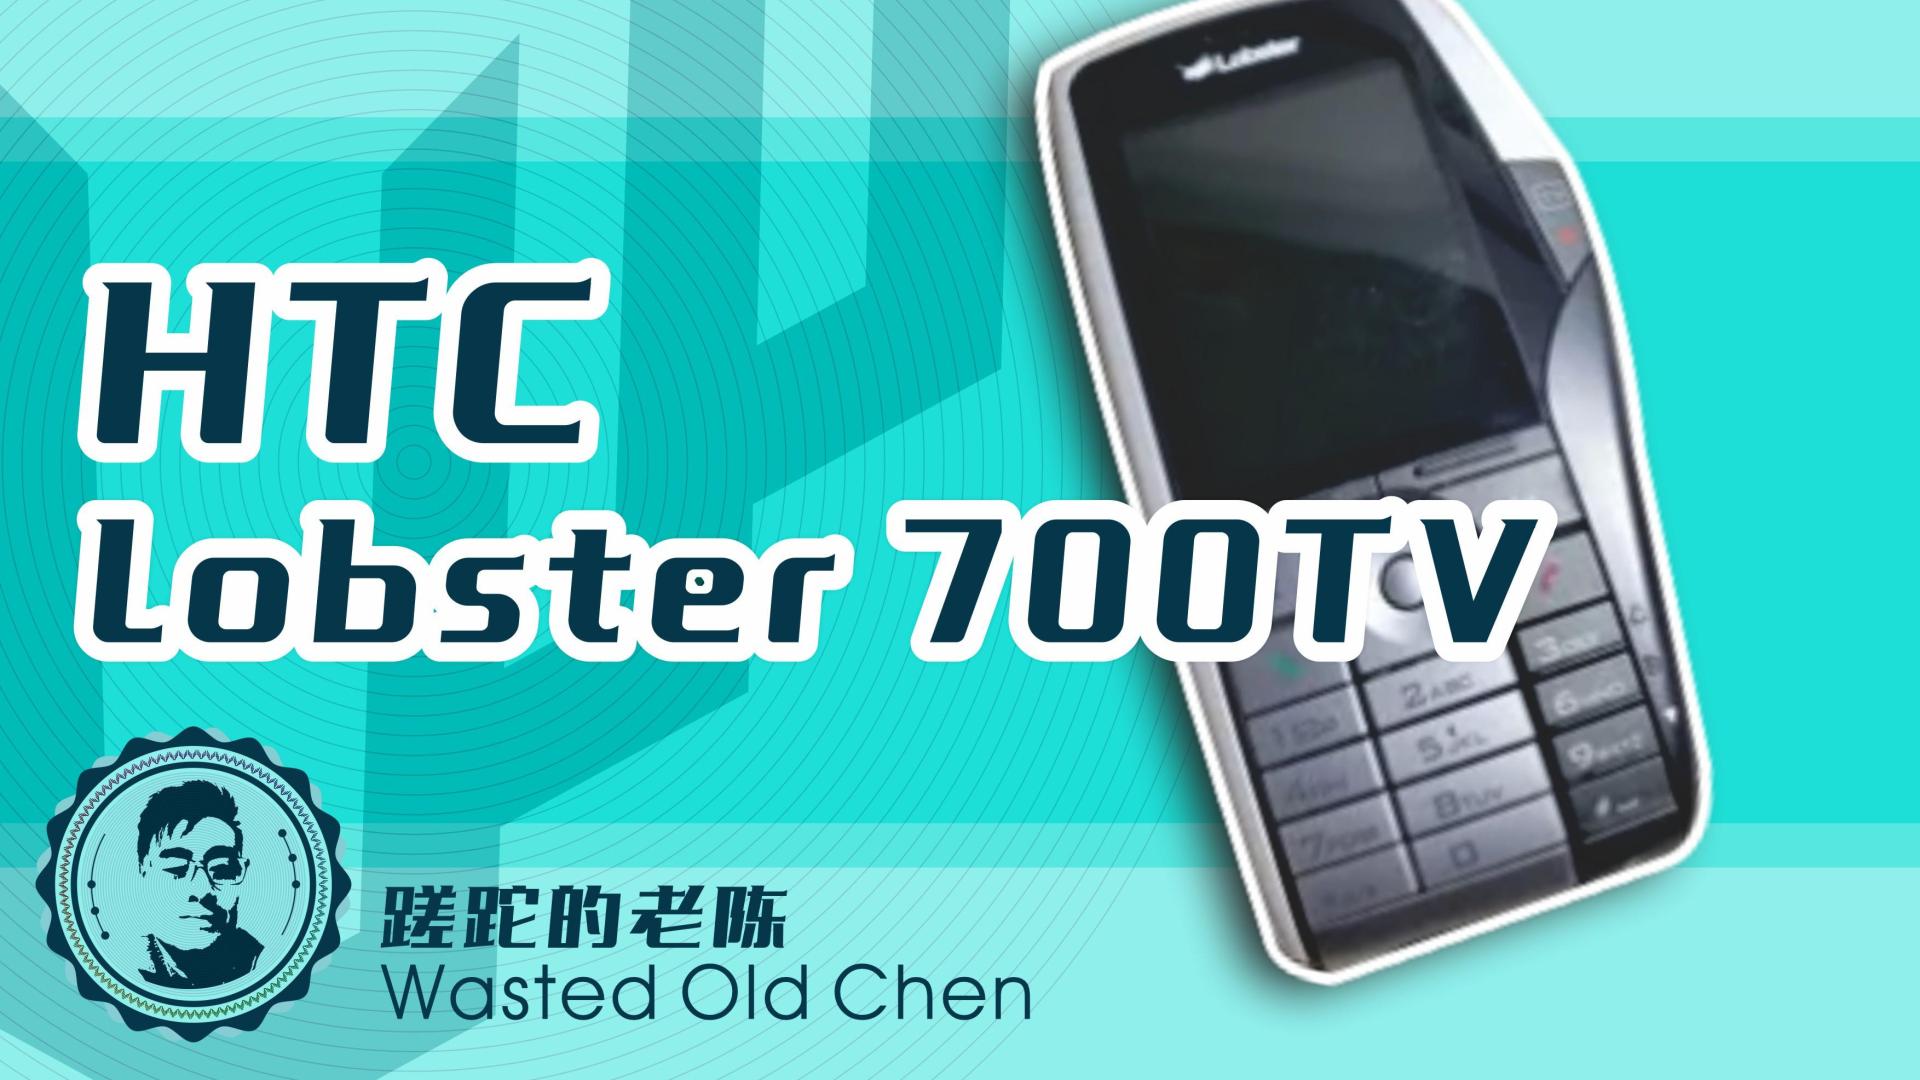 HTC|奇怪的龙虾——HTC Lobster 700TV手机